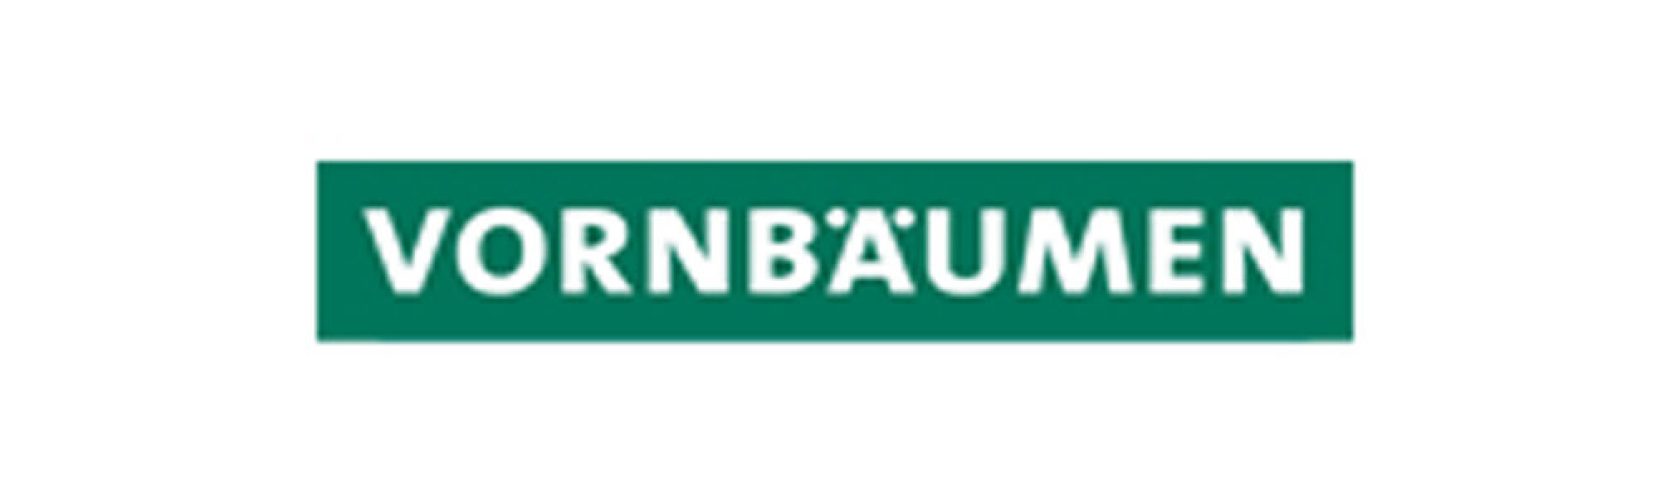 Vornbaumen-Logo_